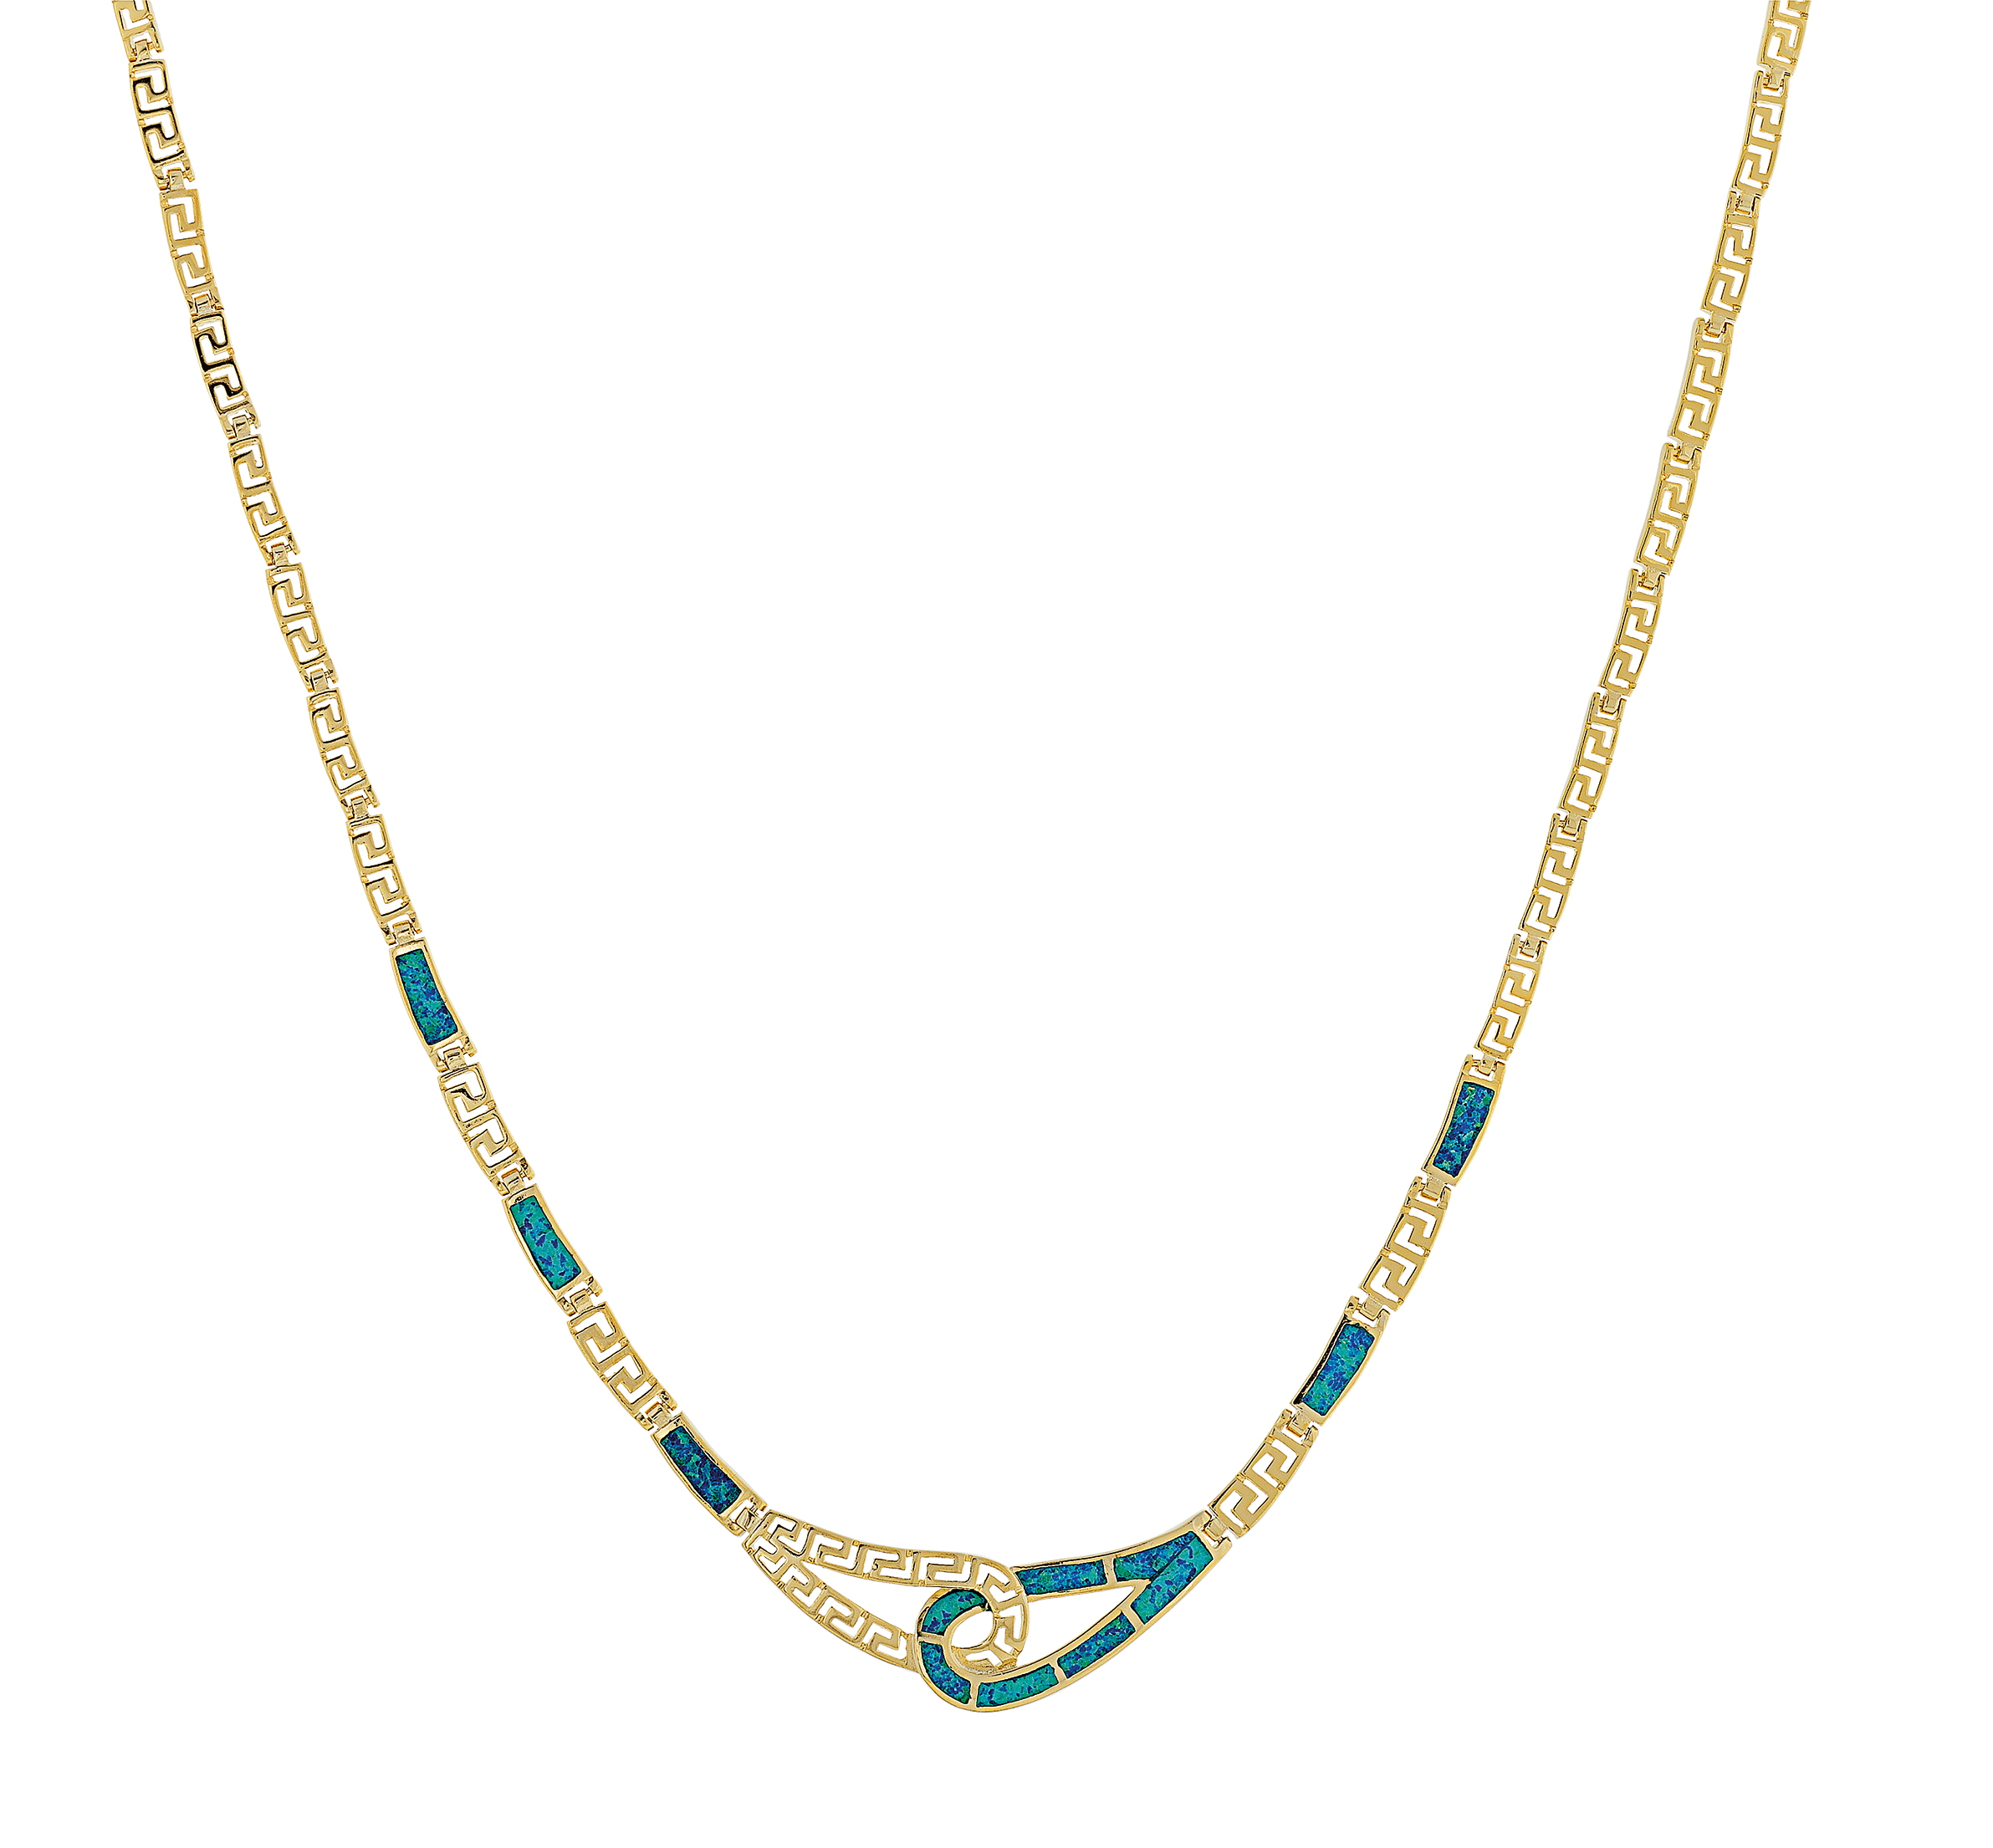 Opal halskæde med blå opal sten, sølv og guldbelægning